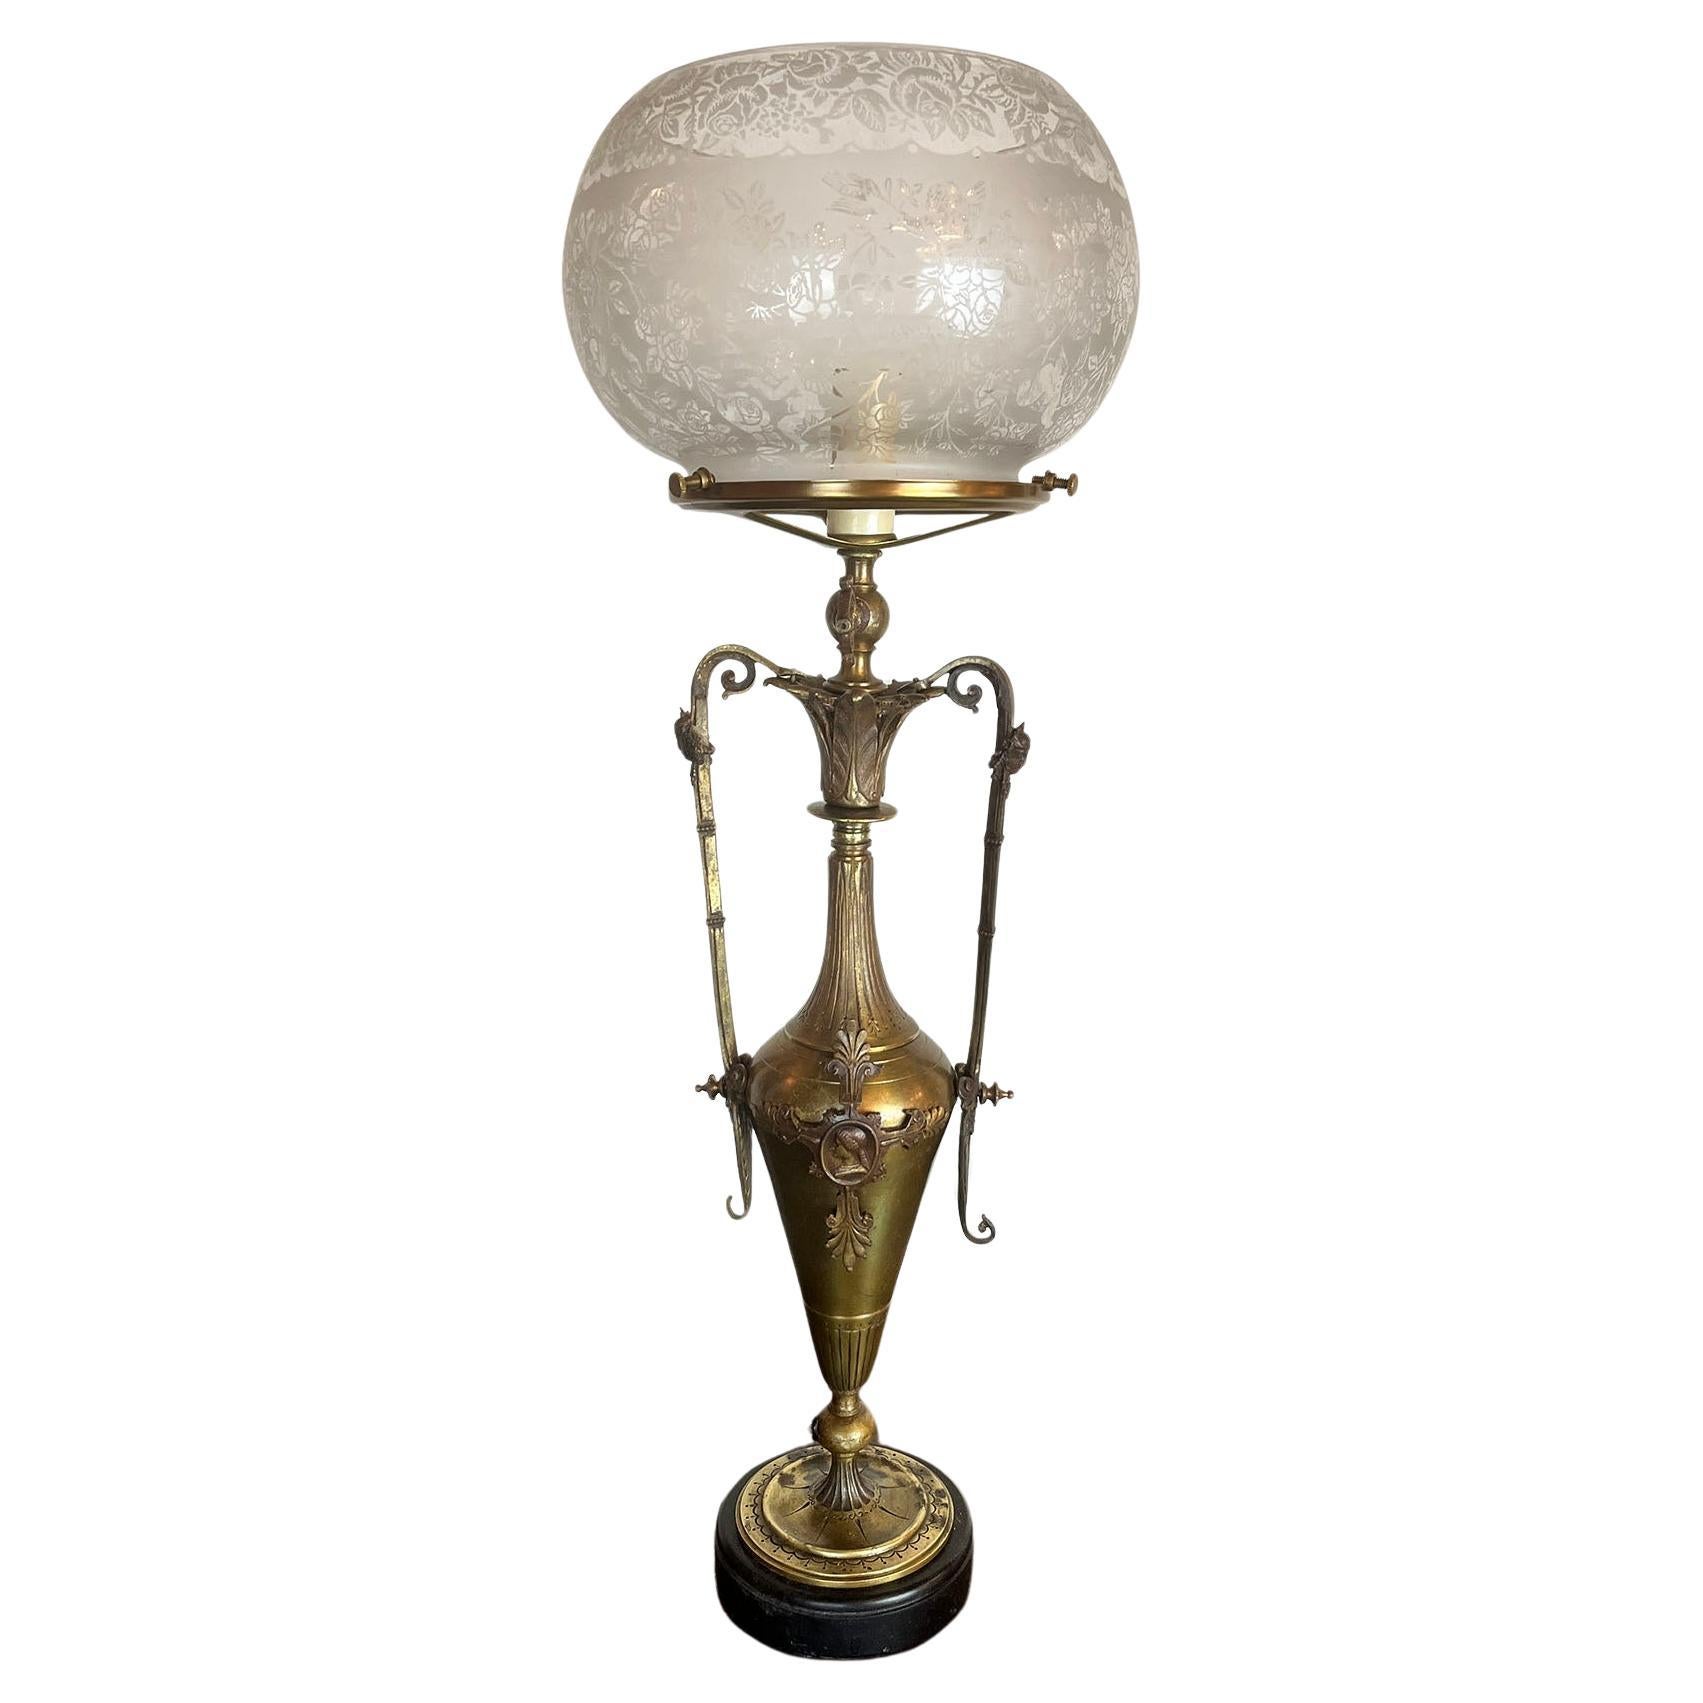 Antique lampe à gaz convertie, fin des années 1870, début des années 1880, bronze, néo-renaissance